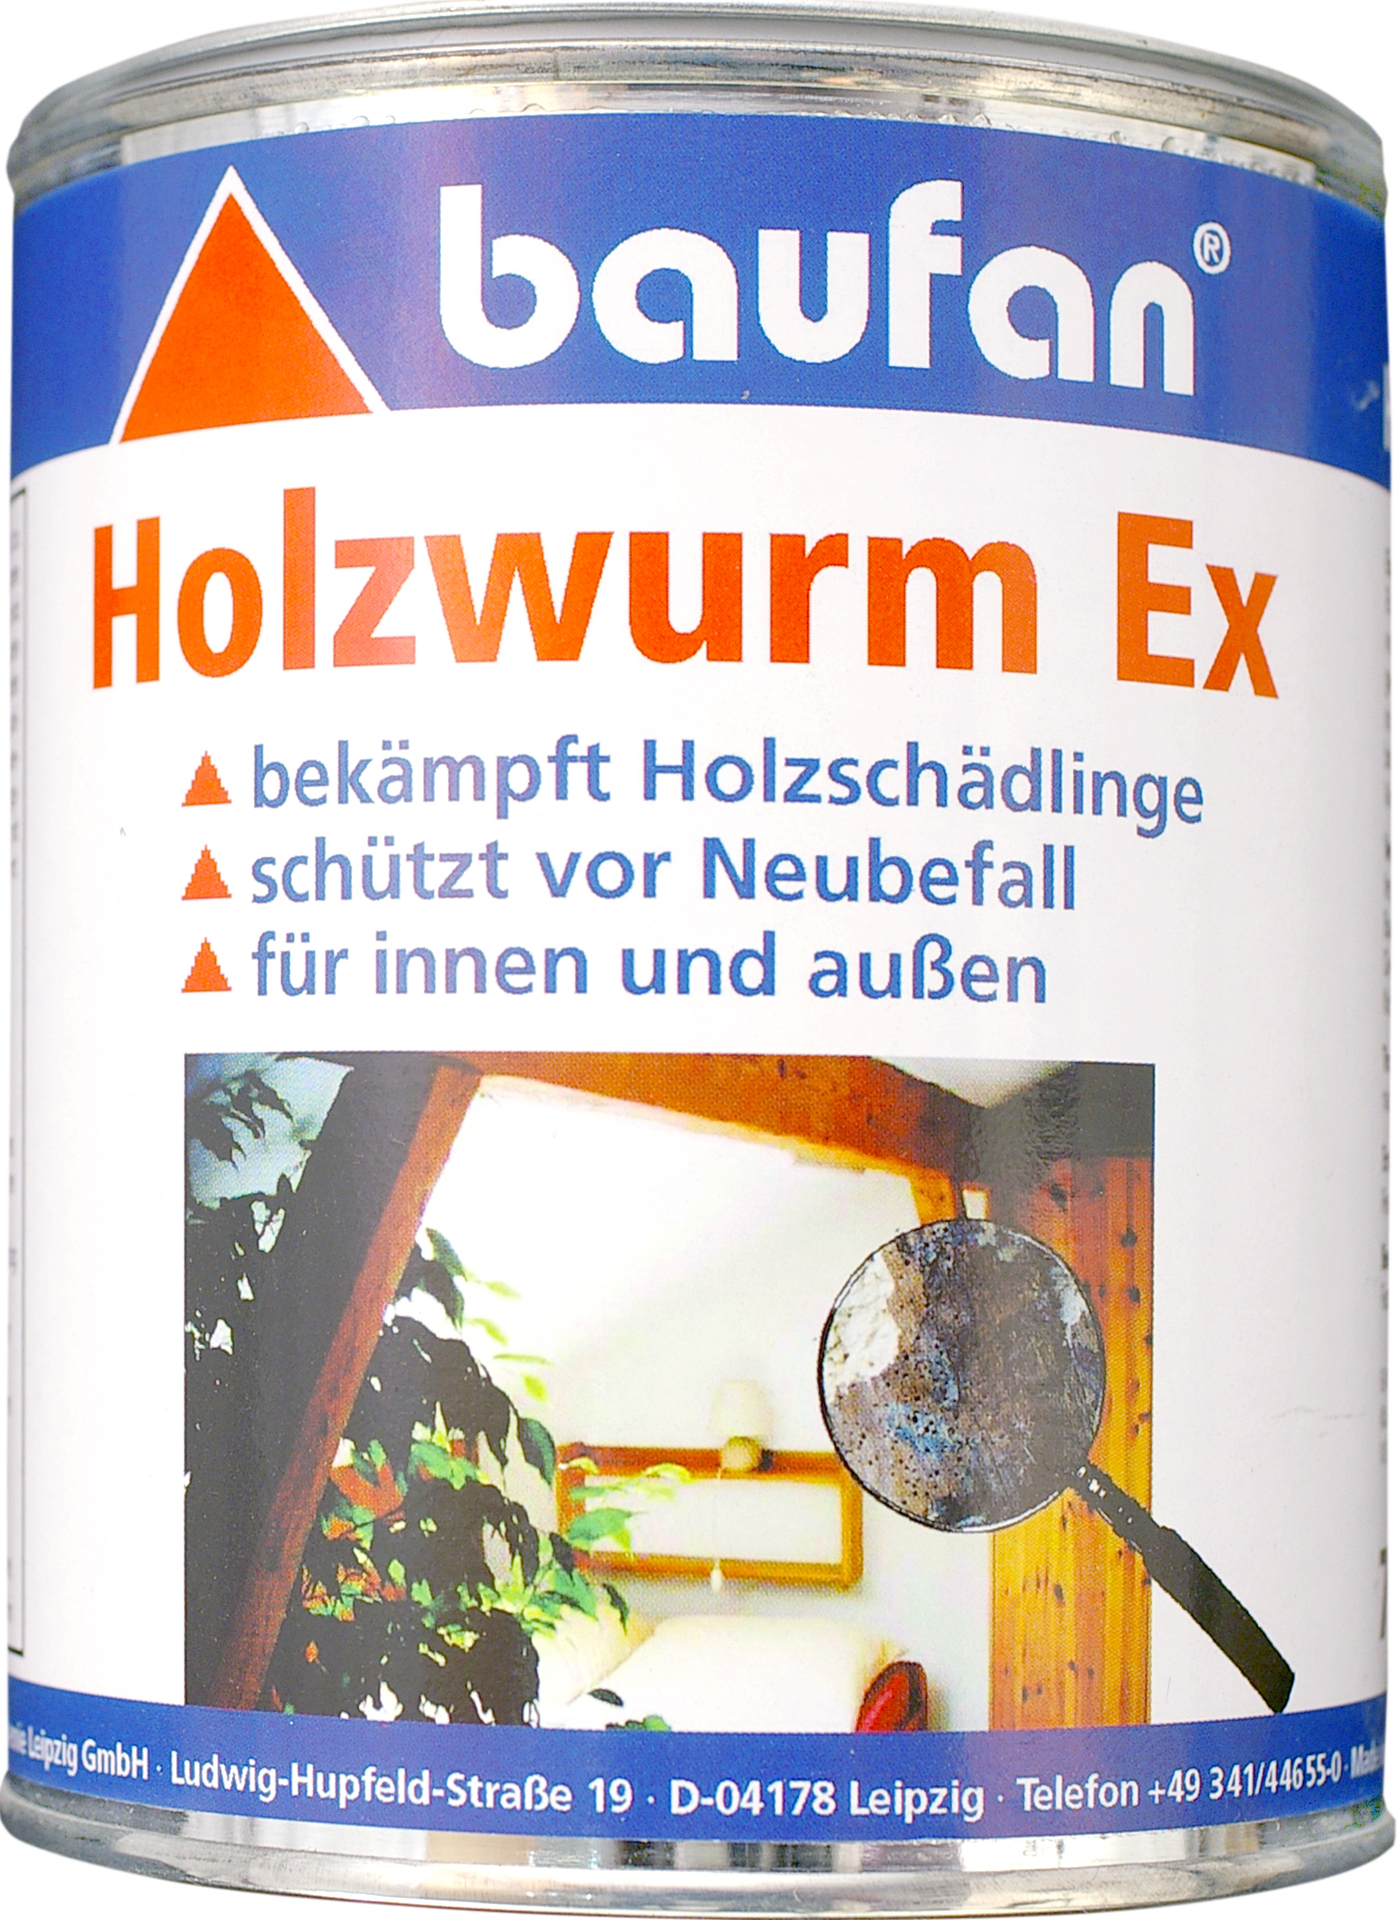 Baufan Bauchemie Leipzig GmbH Baufan Holzwurm-Ex